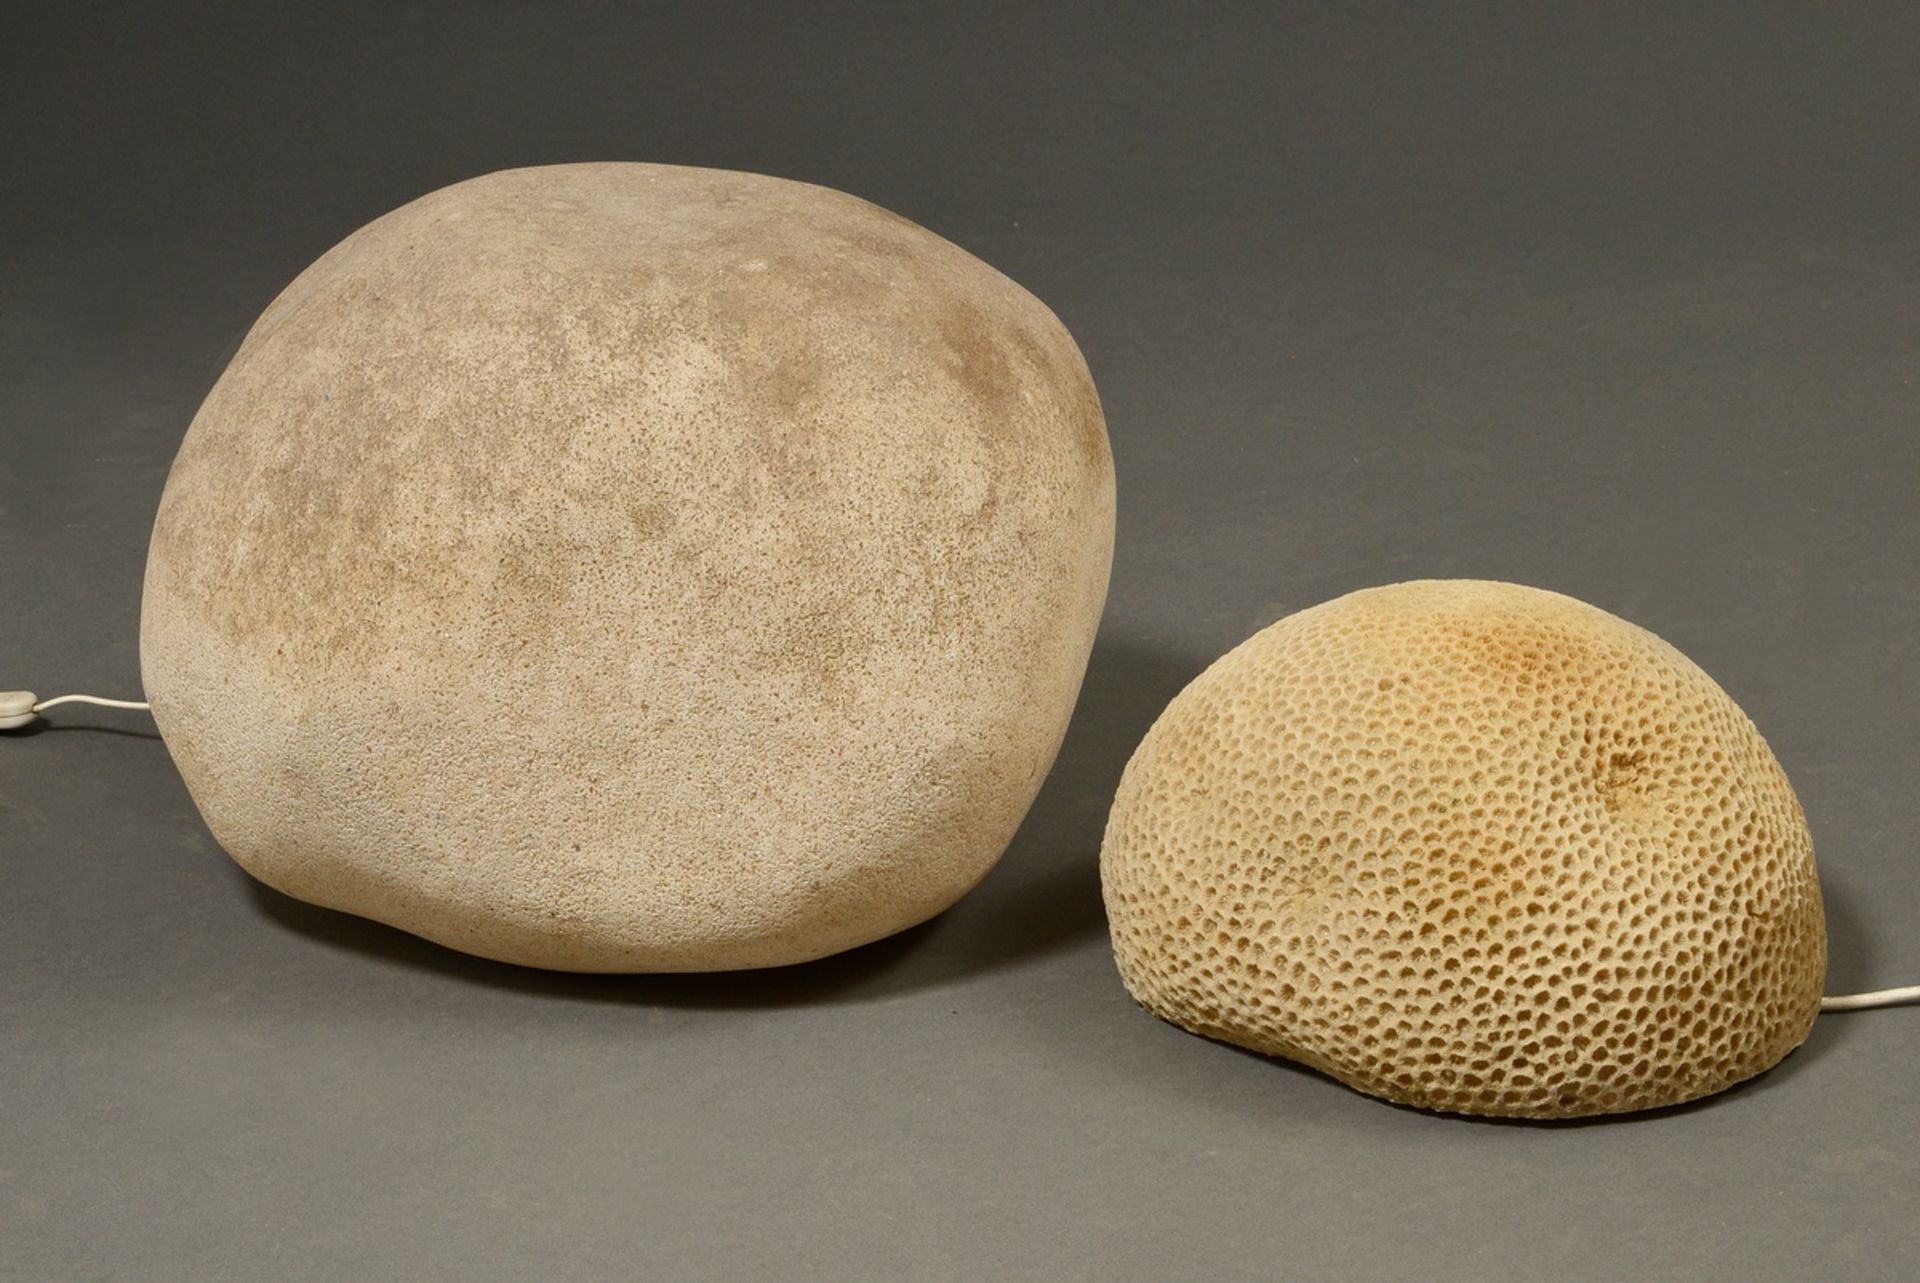 2 Diverse Kunststoff Leuchtobjekte in naturalistischer Form: Stein (ca. 37x42x35cm) und Hirnkoralle